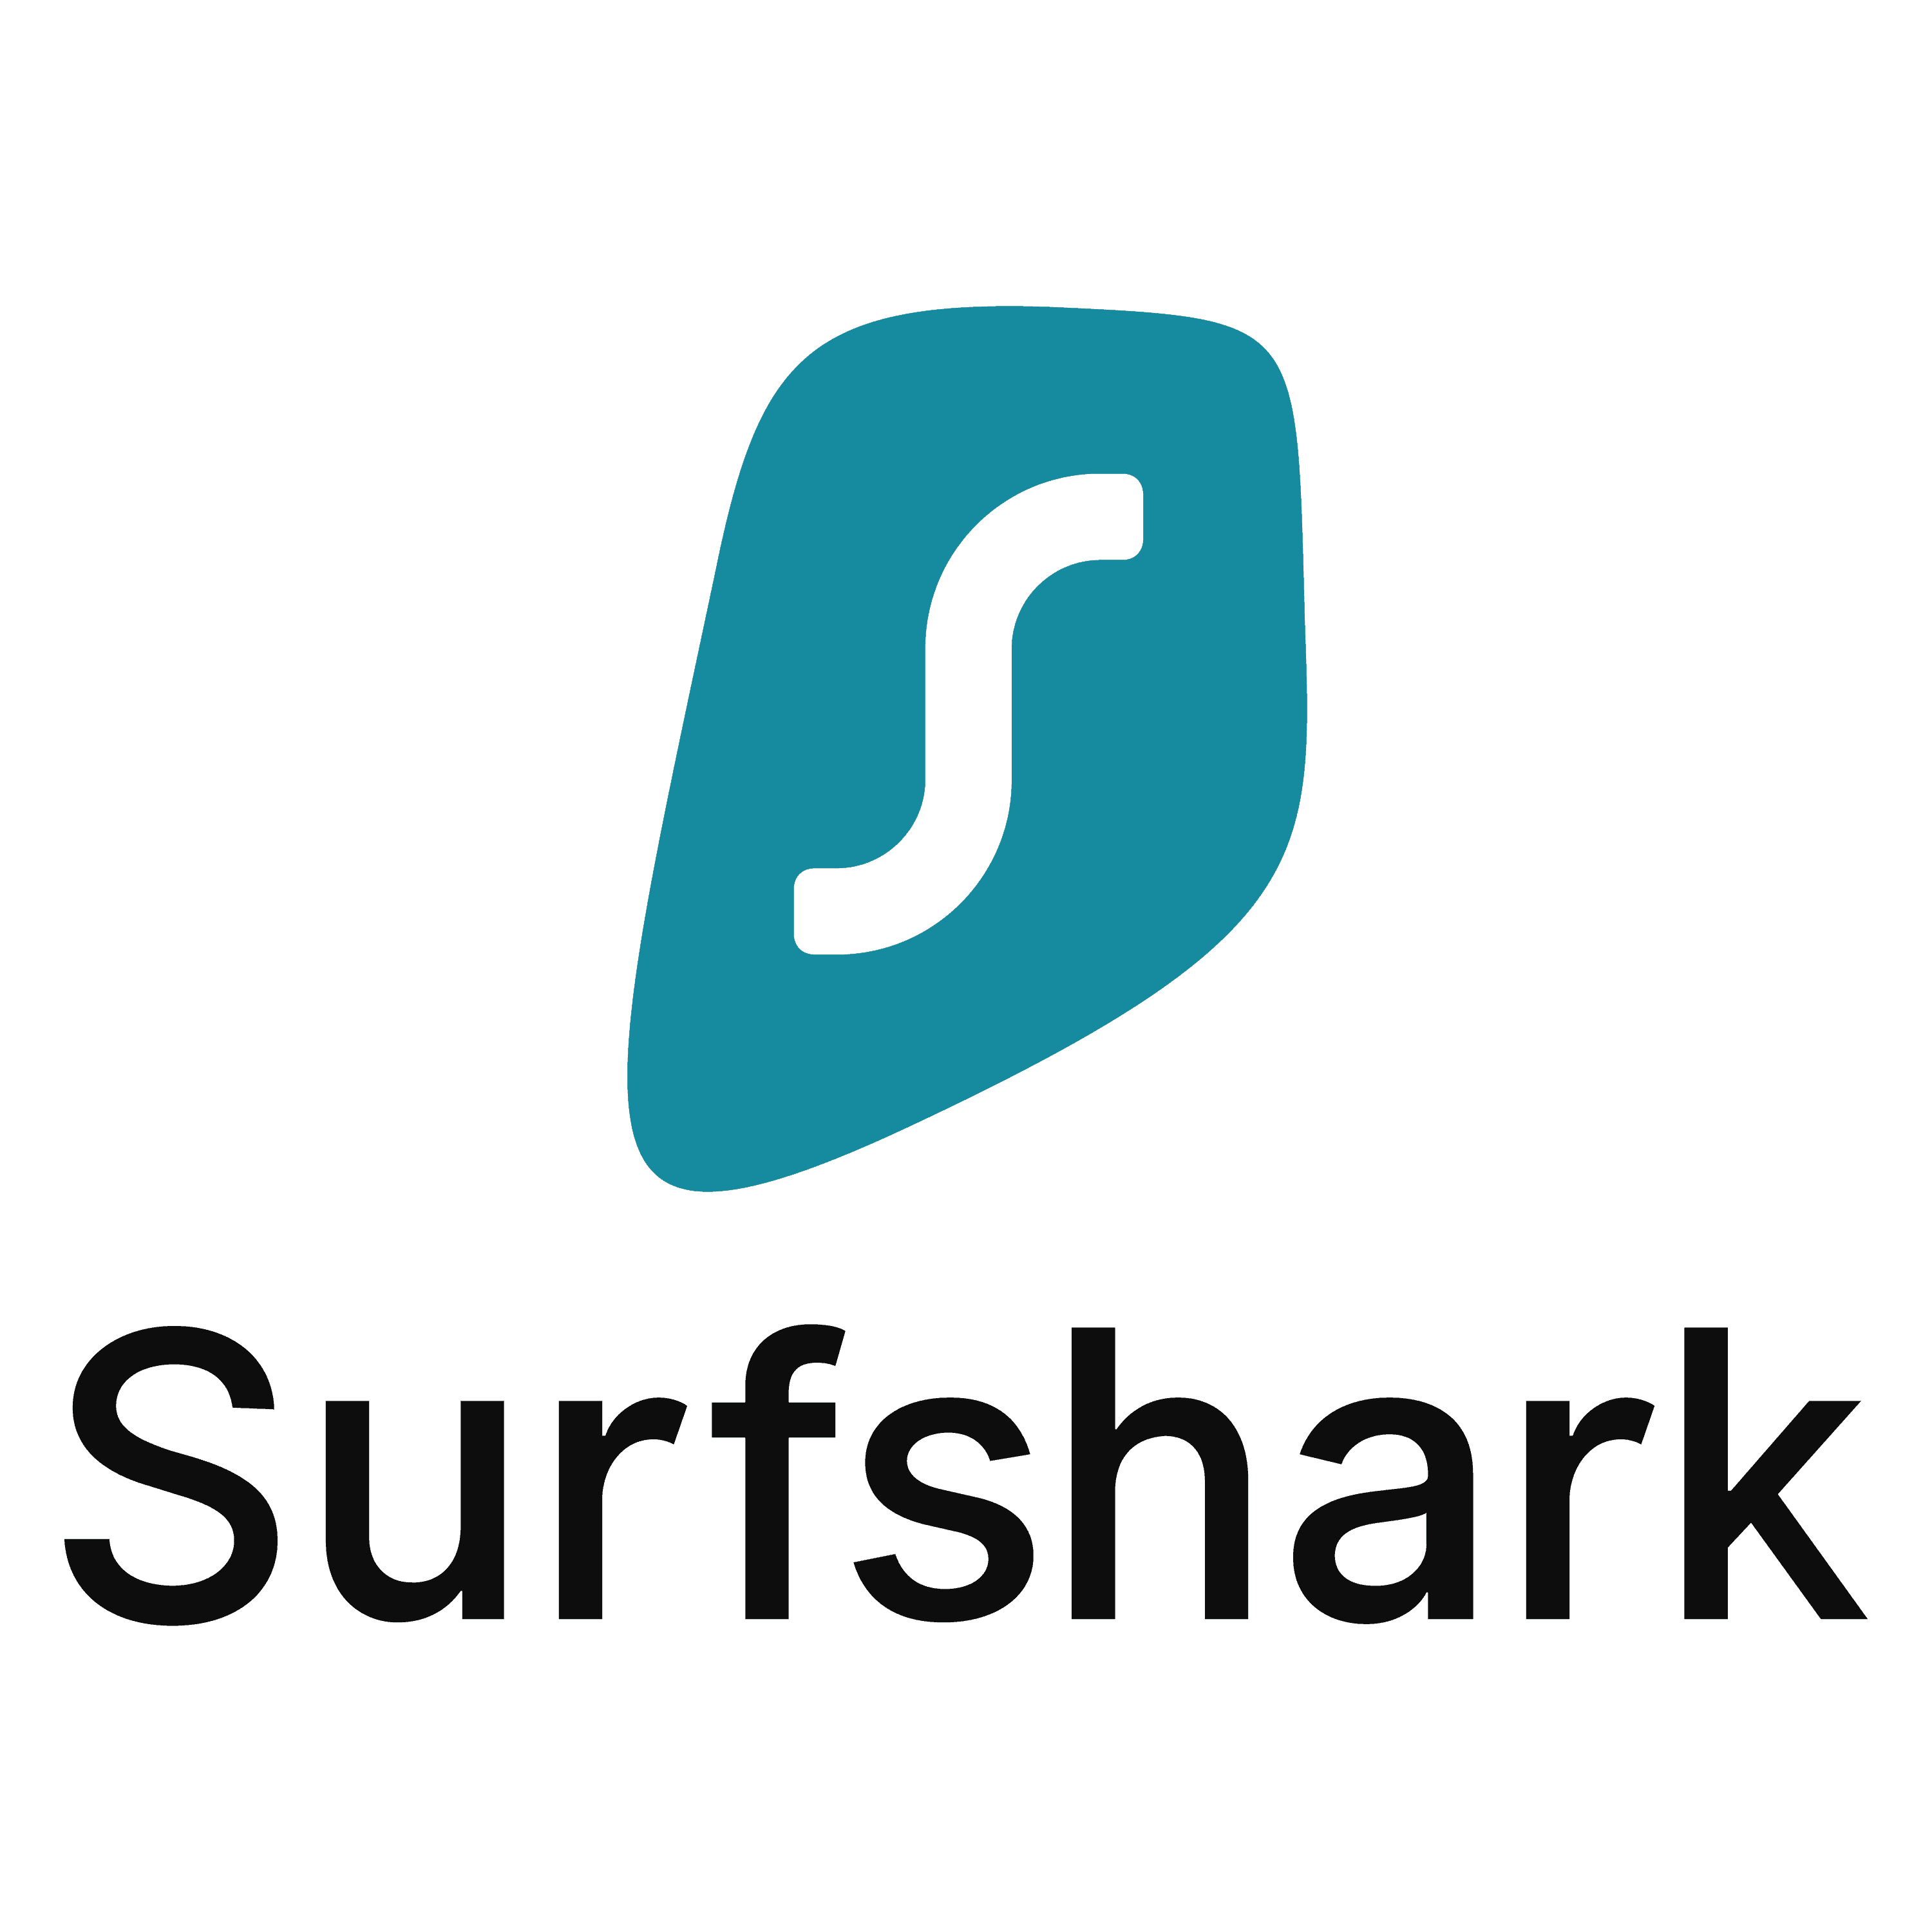 surfshark-png-logo-large-1725580464